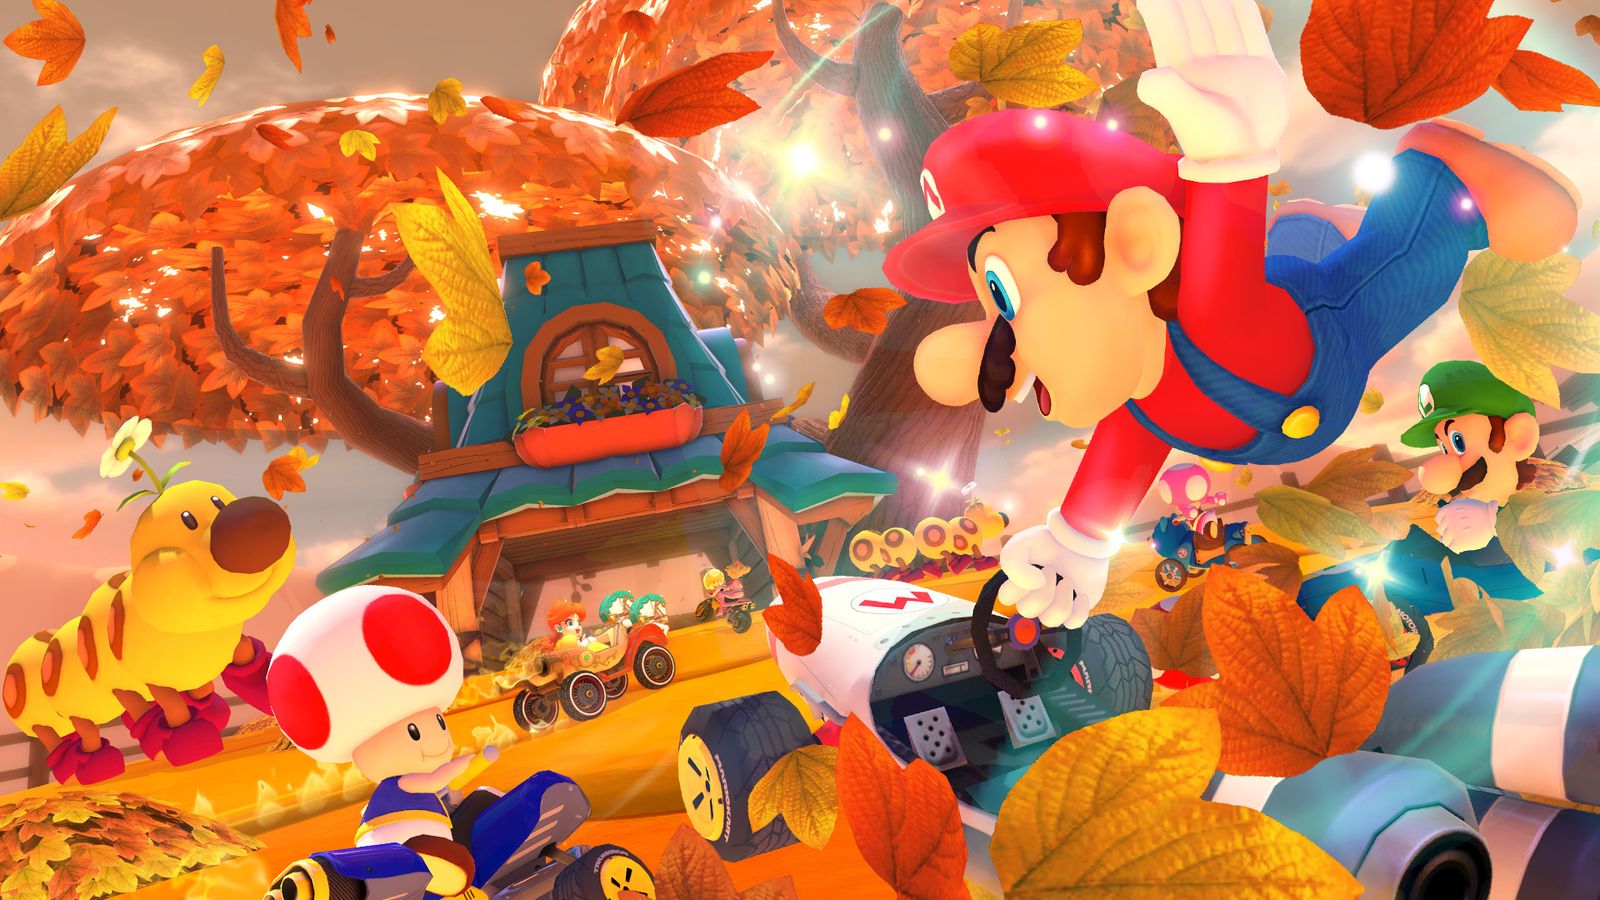 Mario Kart 8 Deluxe sales surpass 52 million